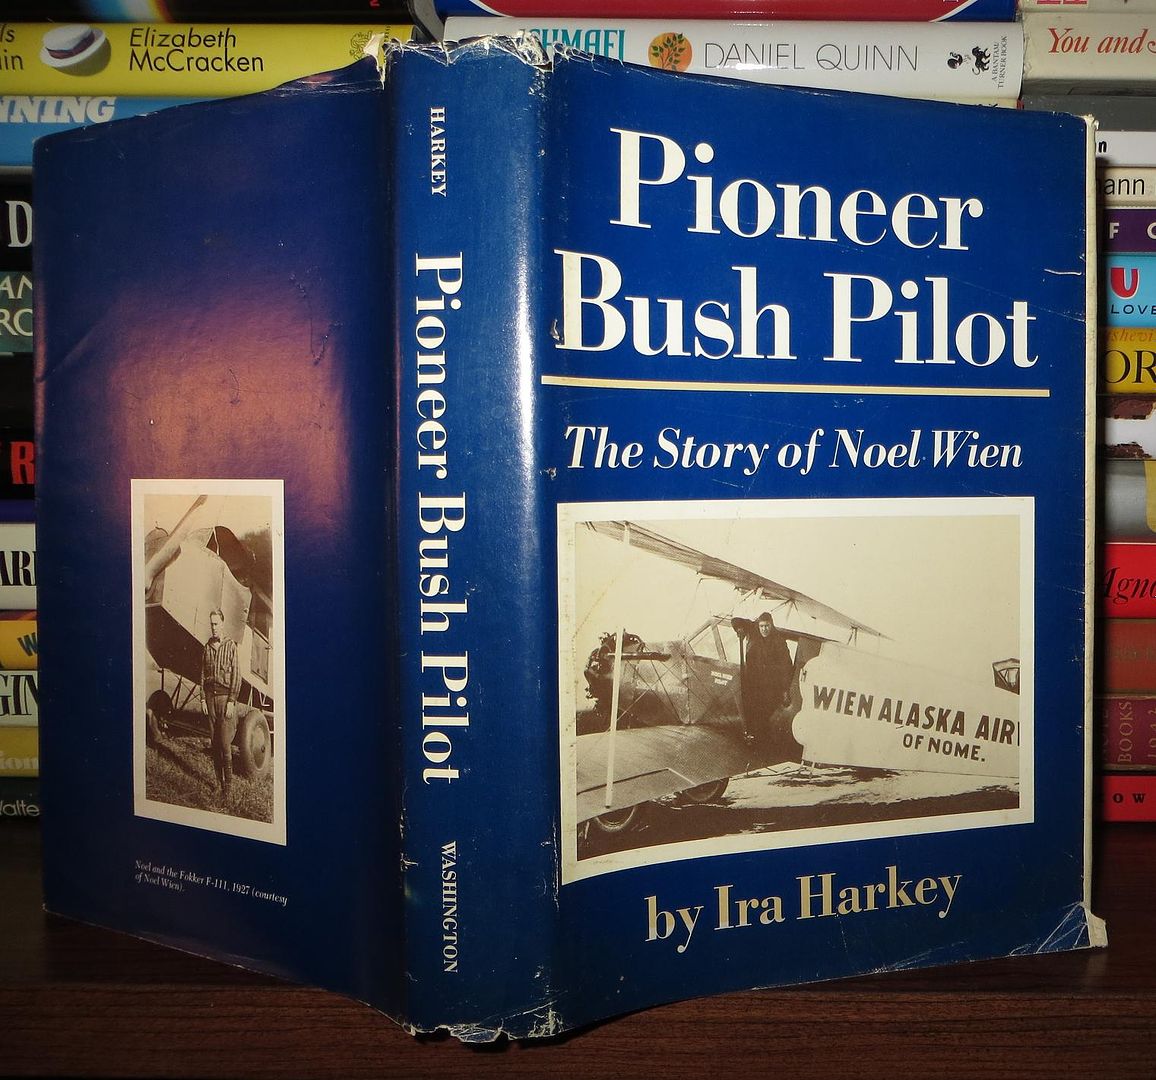 HARKEY, IRA -  NOEL WIEN - Pioneer Bush Pilot the Story of Noel Wien